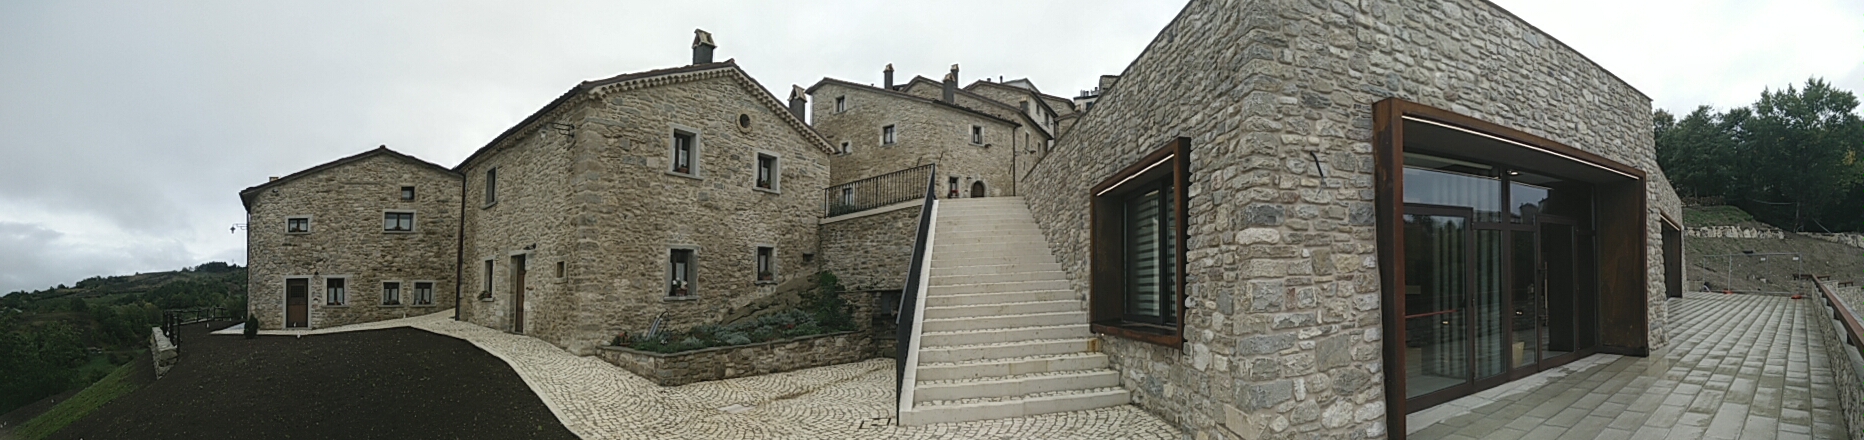 Borgo Tufi, panoramic view